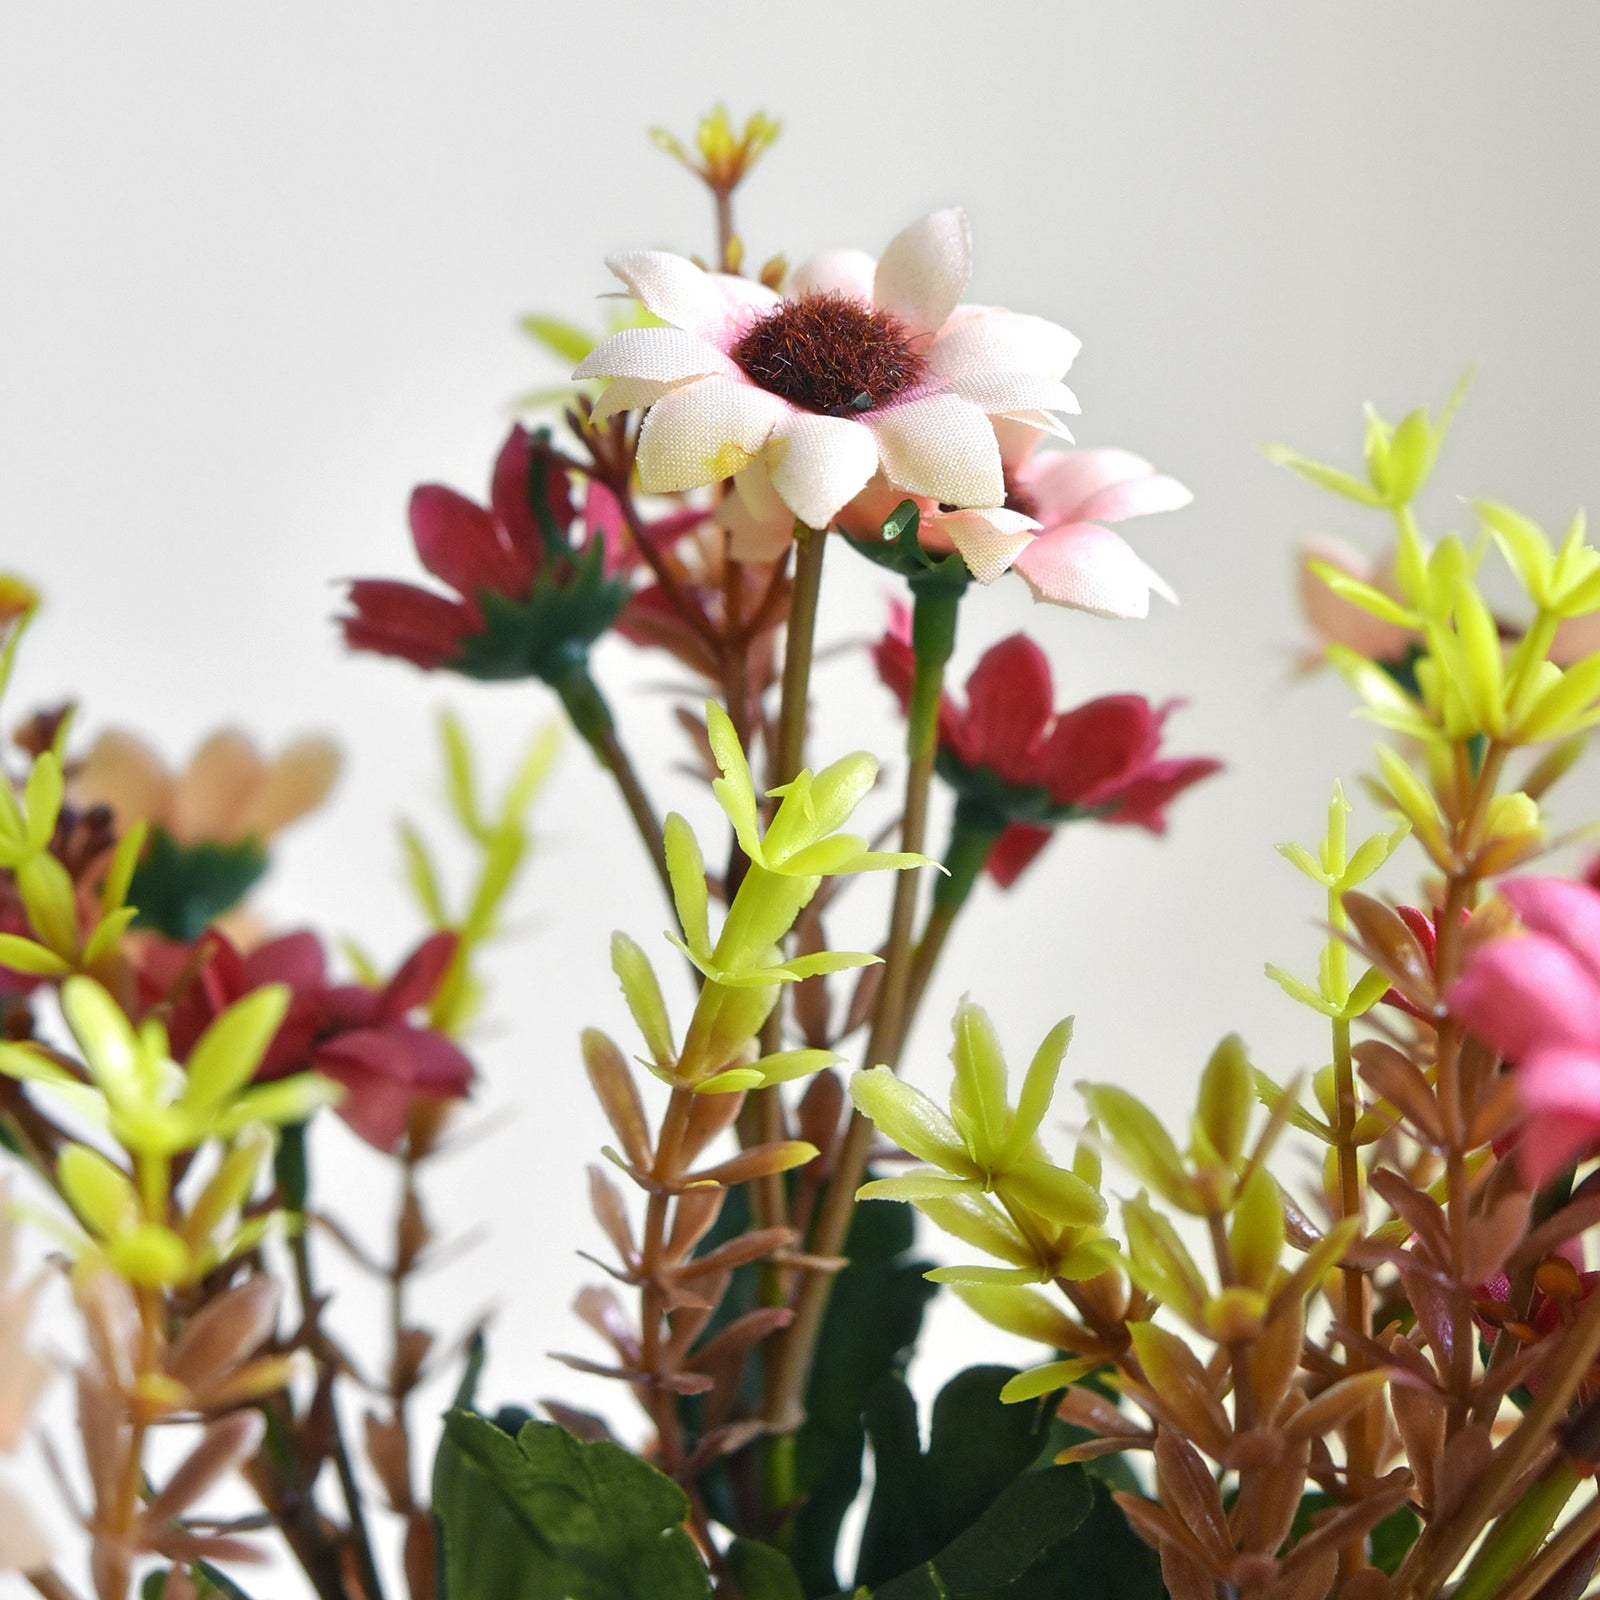 FiveSeasonStuff Daisy Silk Flowers, Outdoor Artificial Flowers Arrangement (4 Flower Bundles,) 13 inches Tall (Mixed Sweet Pinks)